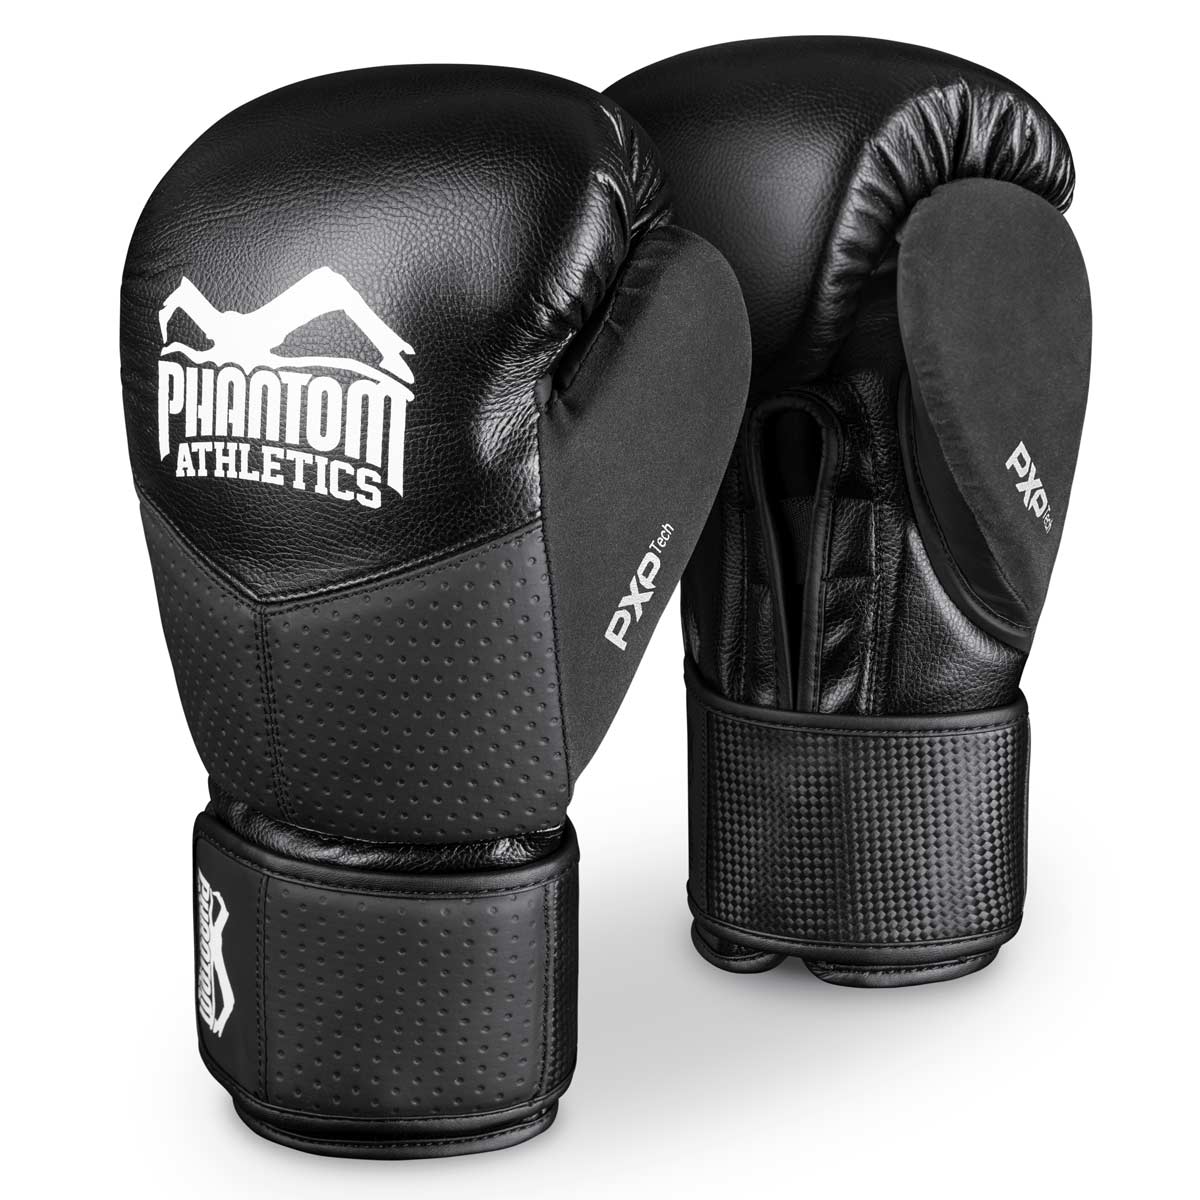 Die Phantom RIOT PRO Boxhandschuhe. Ideal für dein Kampfsport Training und Wettkämpfe. Perfekte Passform und überragende Qualität für Training und Sparring.